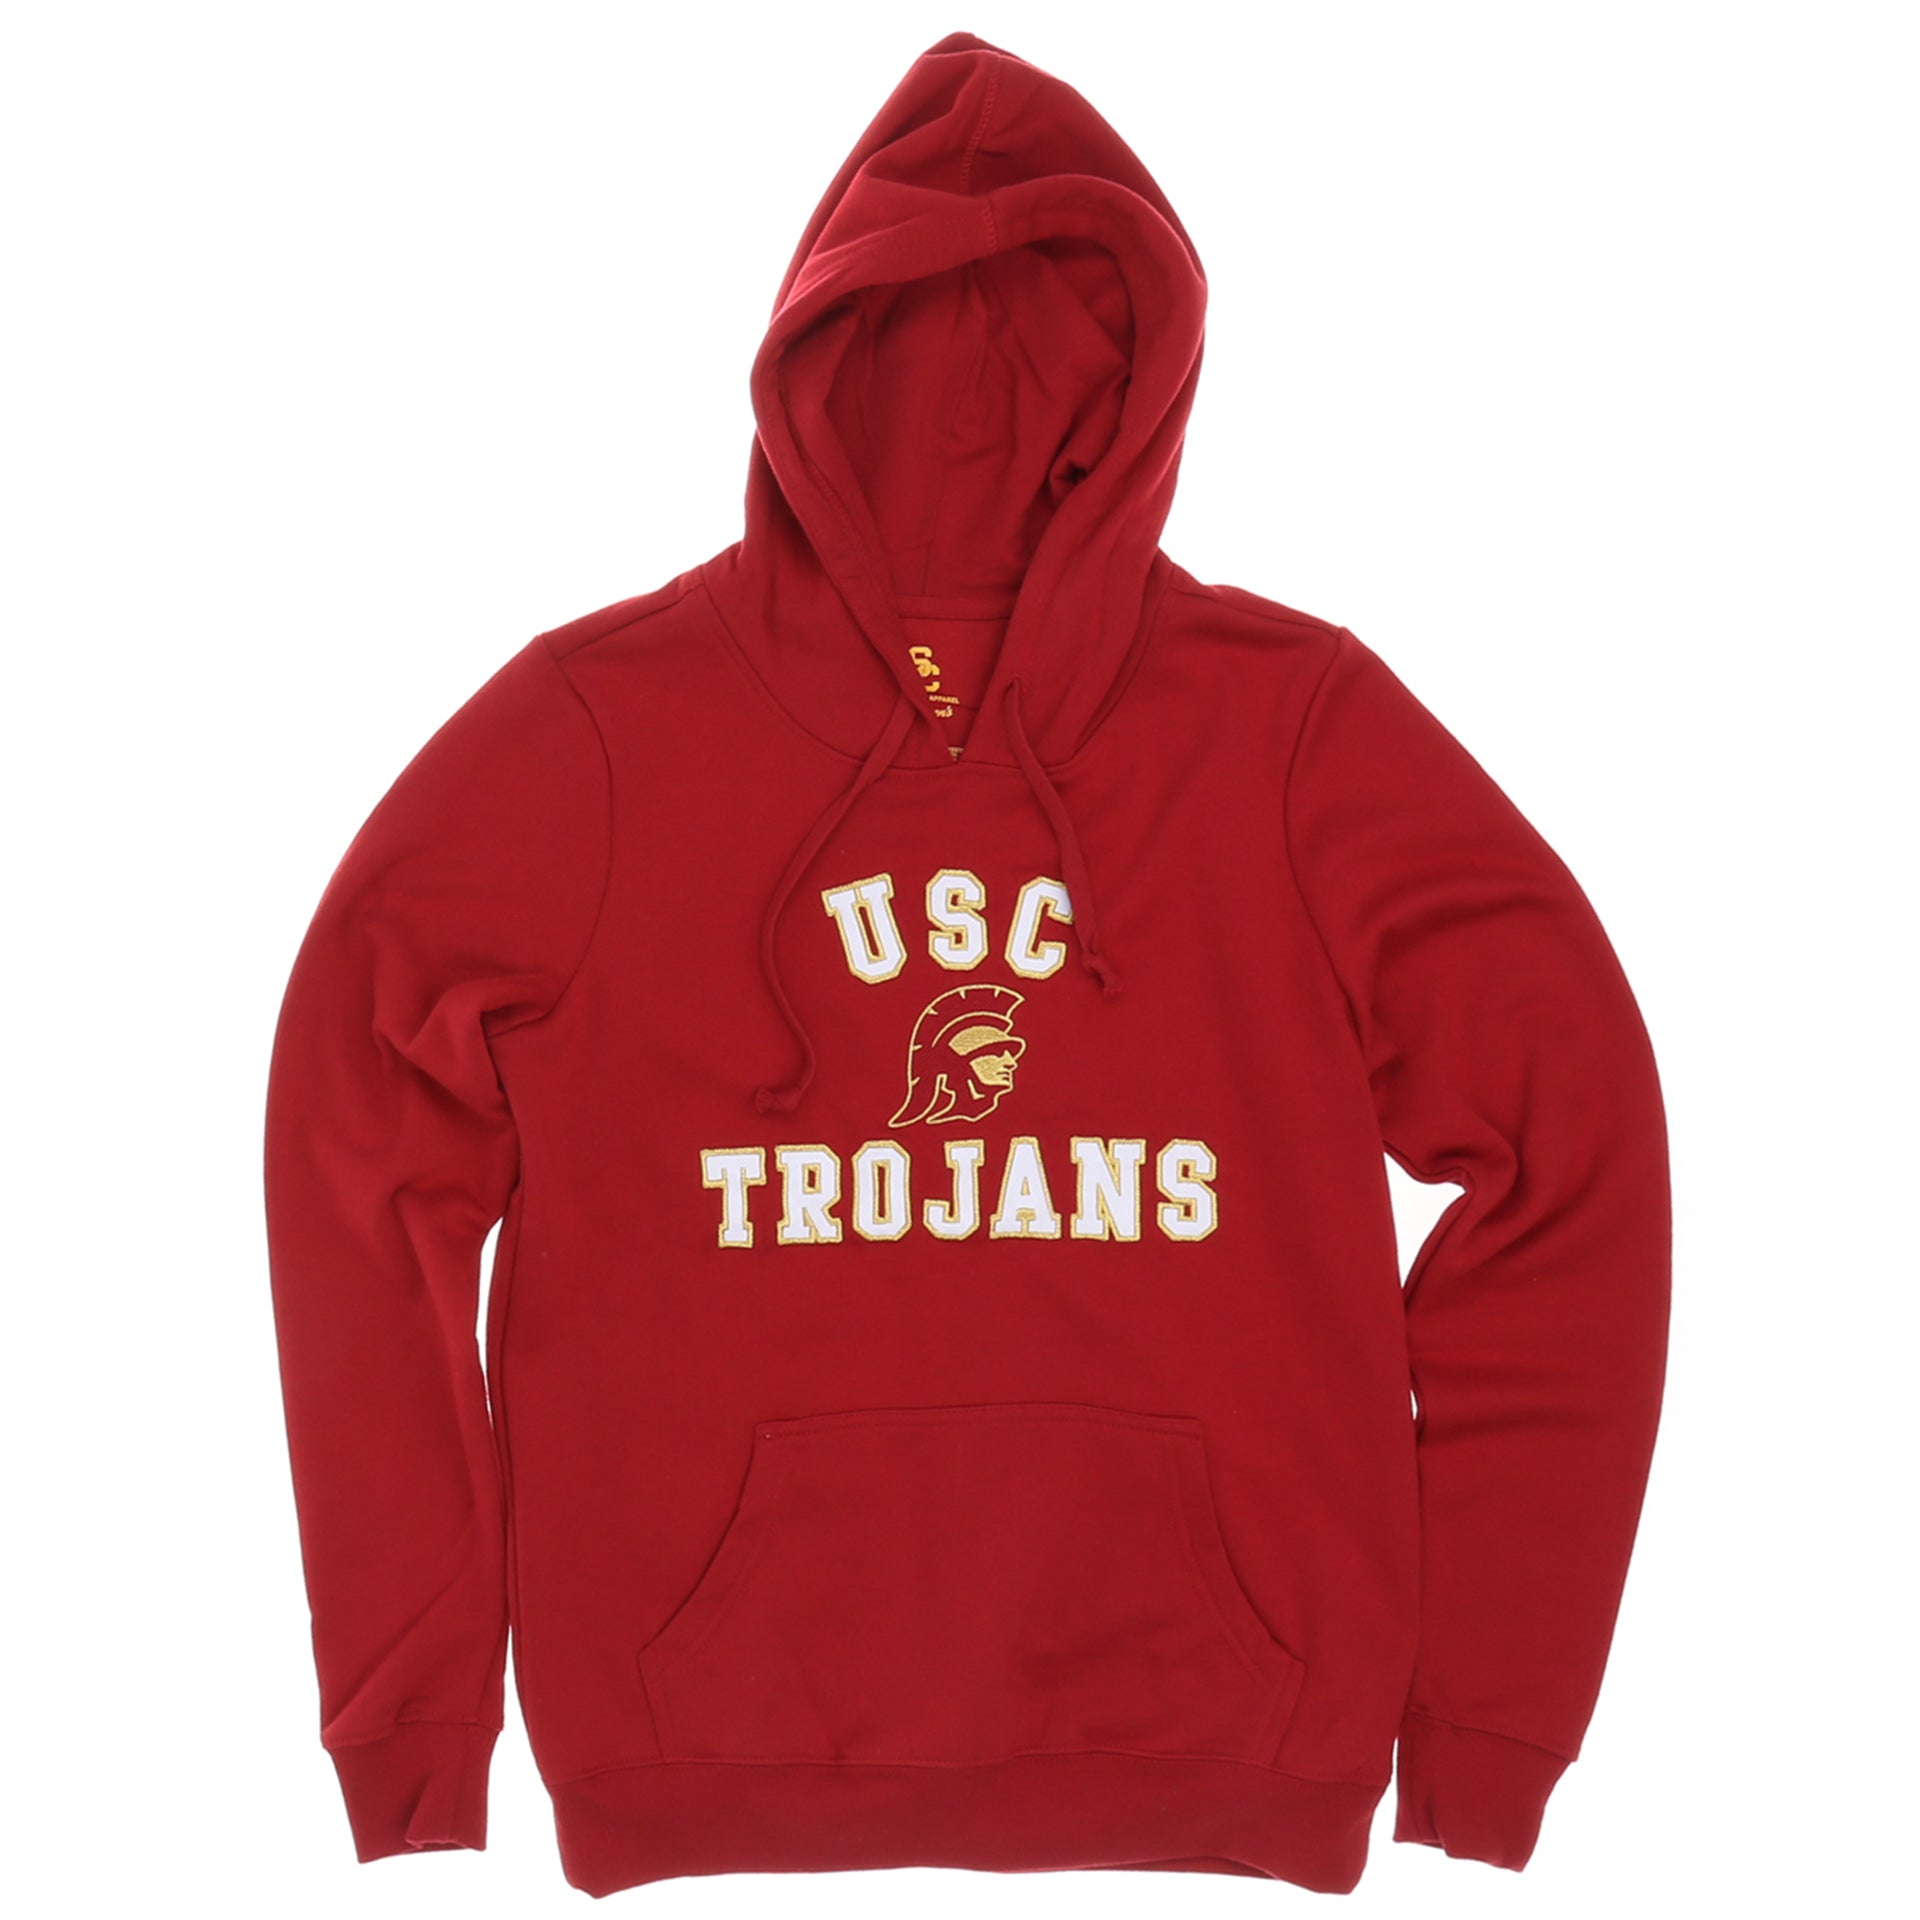 trojans hoodie